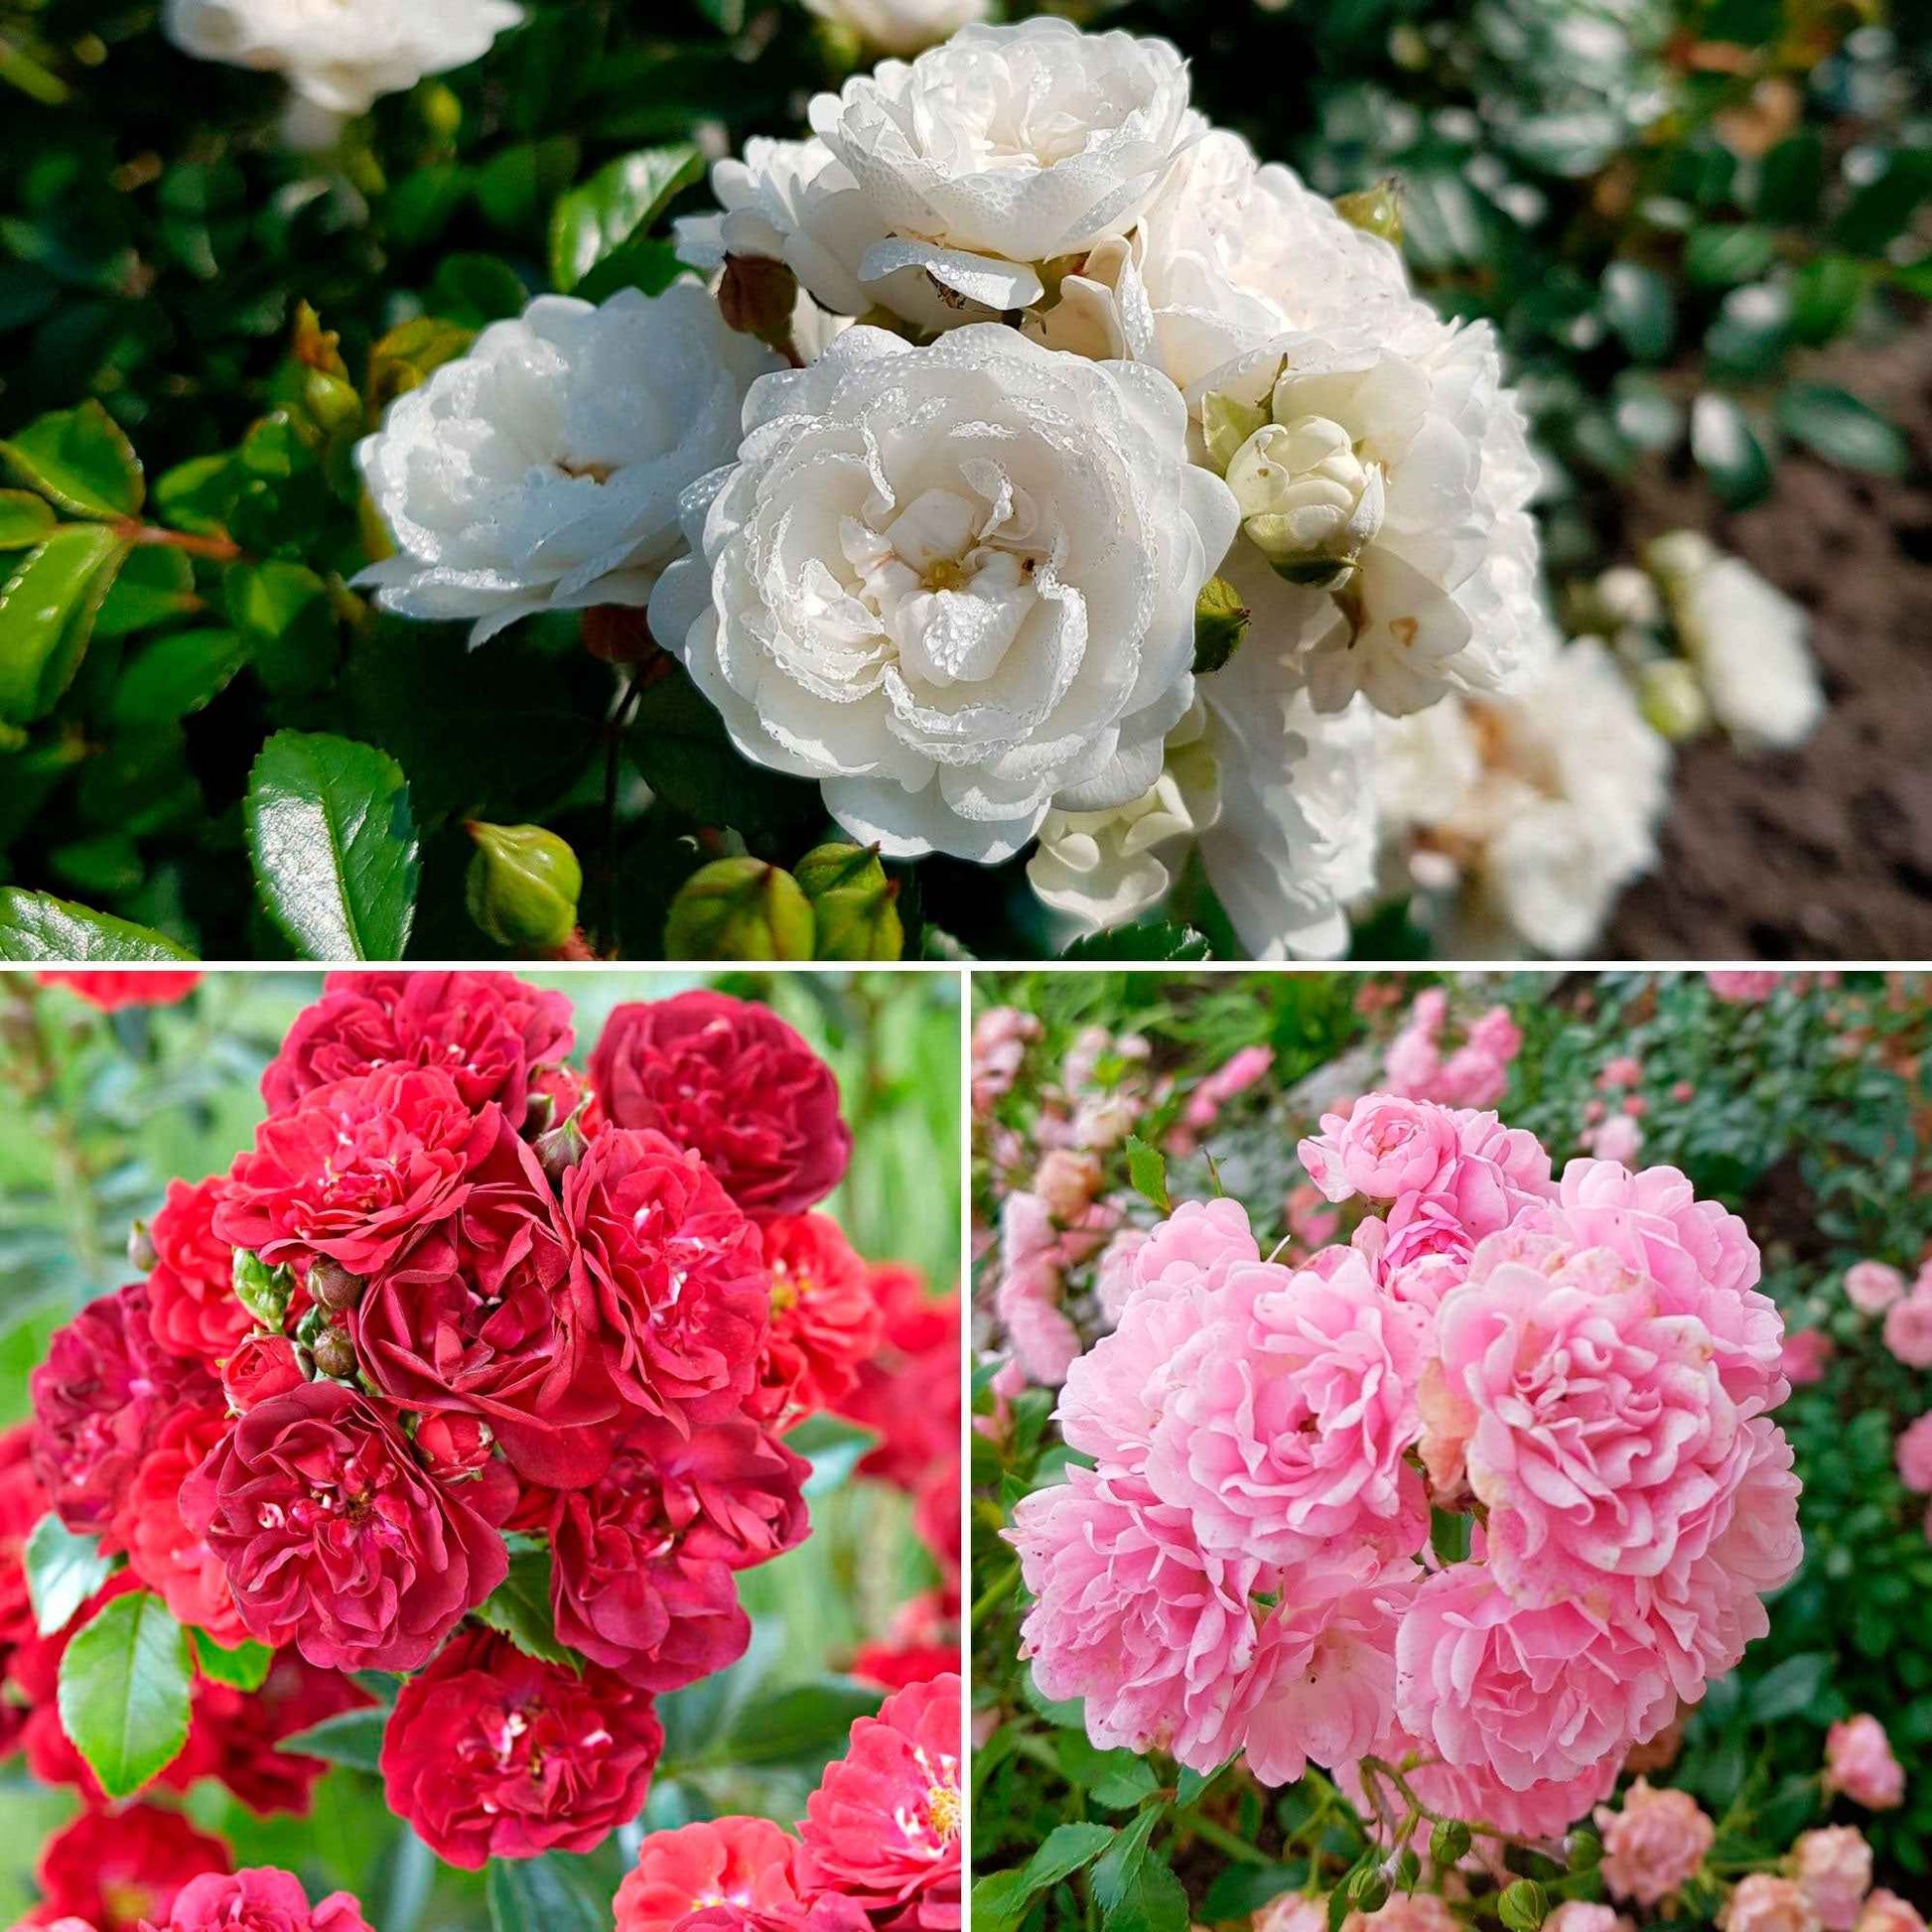 3x Mix aus bodendeckenden Rosen 'Bodendecker' Weiß-Rot-Rosa  - Wurzelnackte Pflanzen - Winterhart - Bodendecker